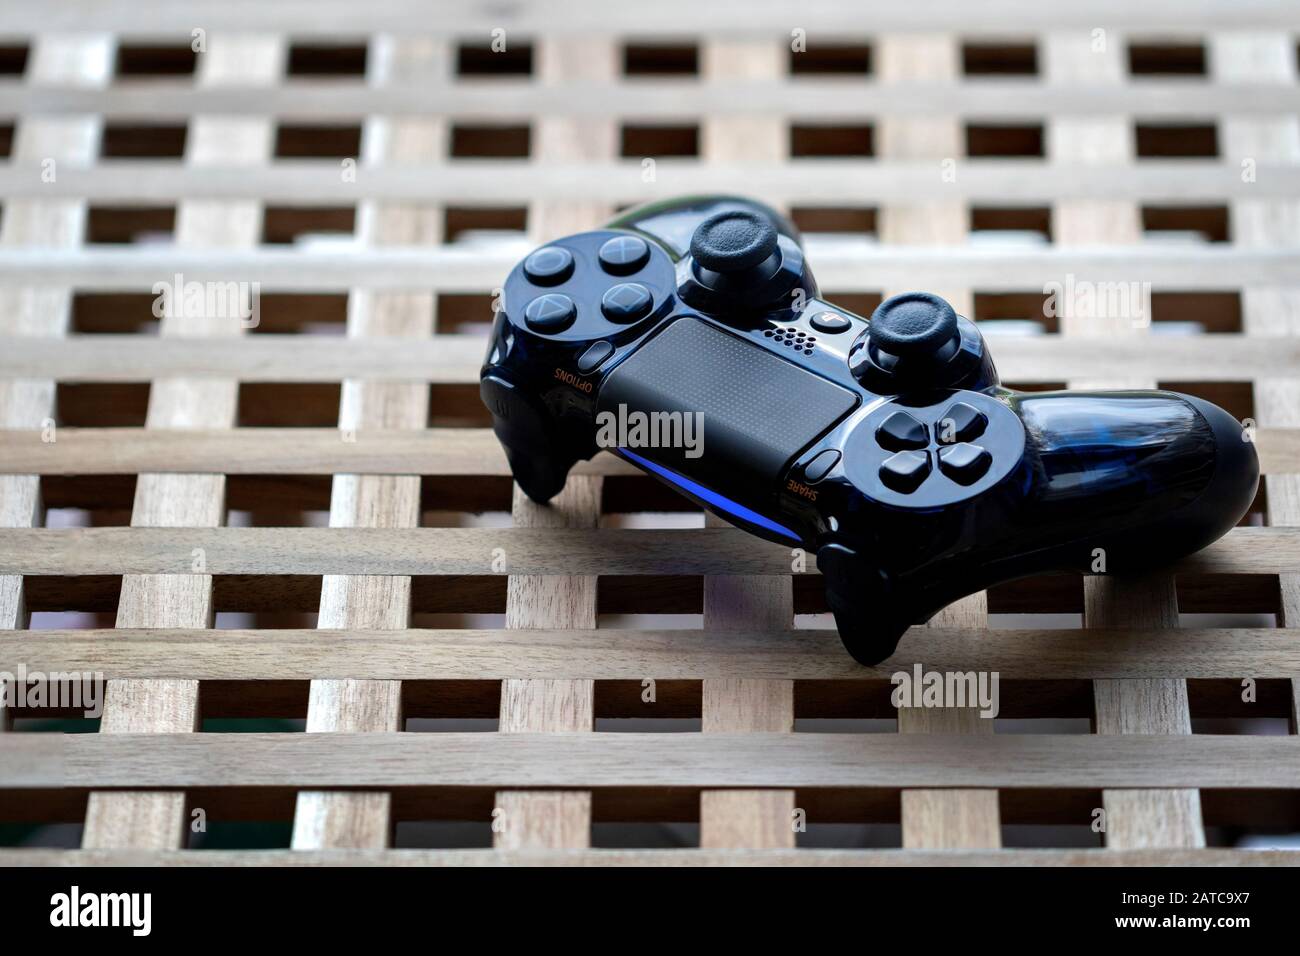 Playstation 1 Stockfotos und -bilder Kaufen - Alamy